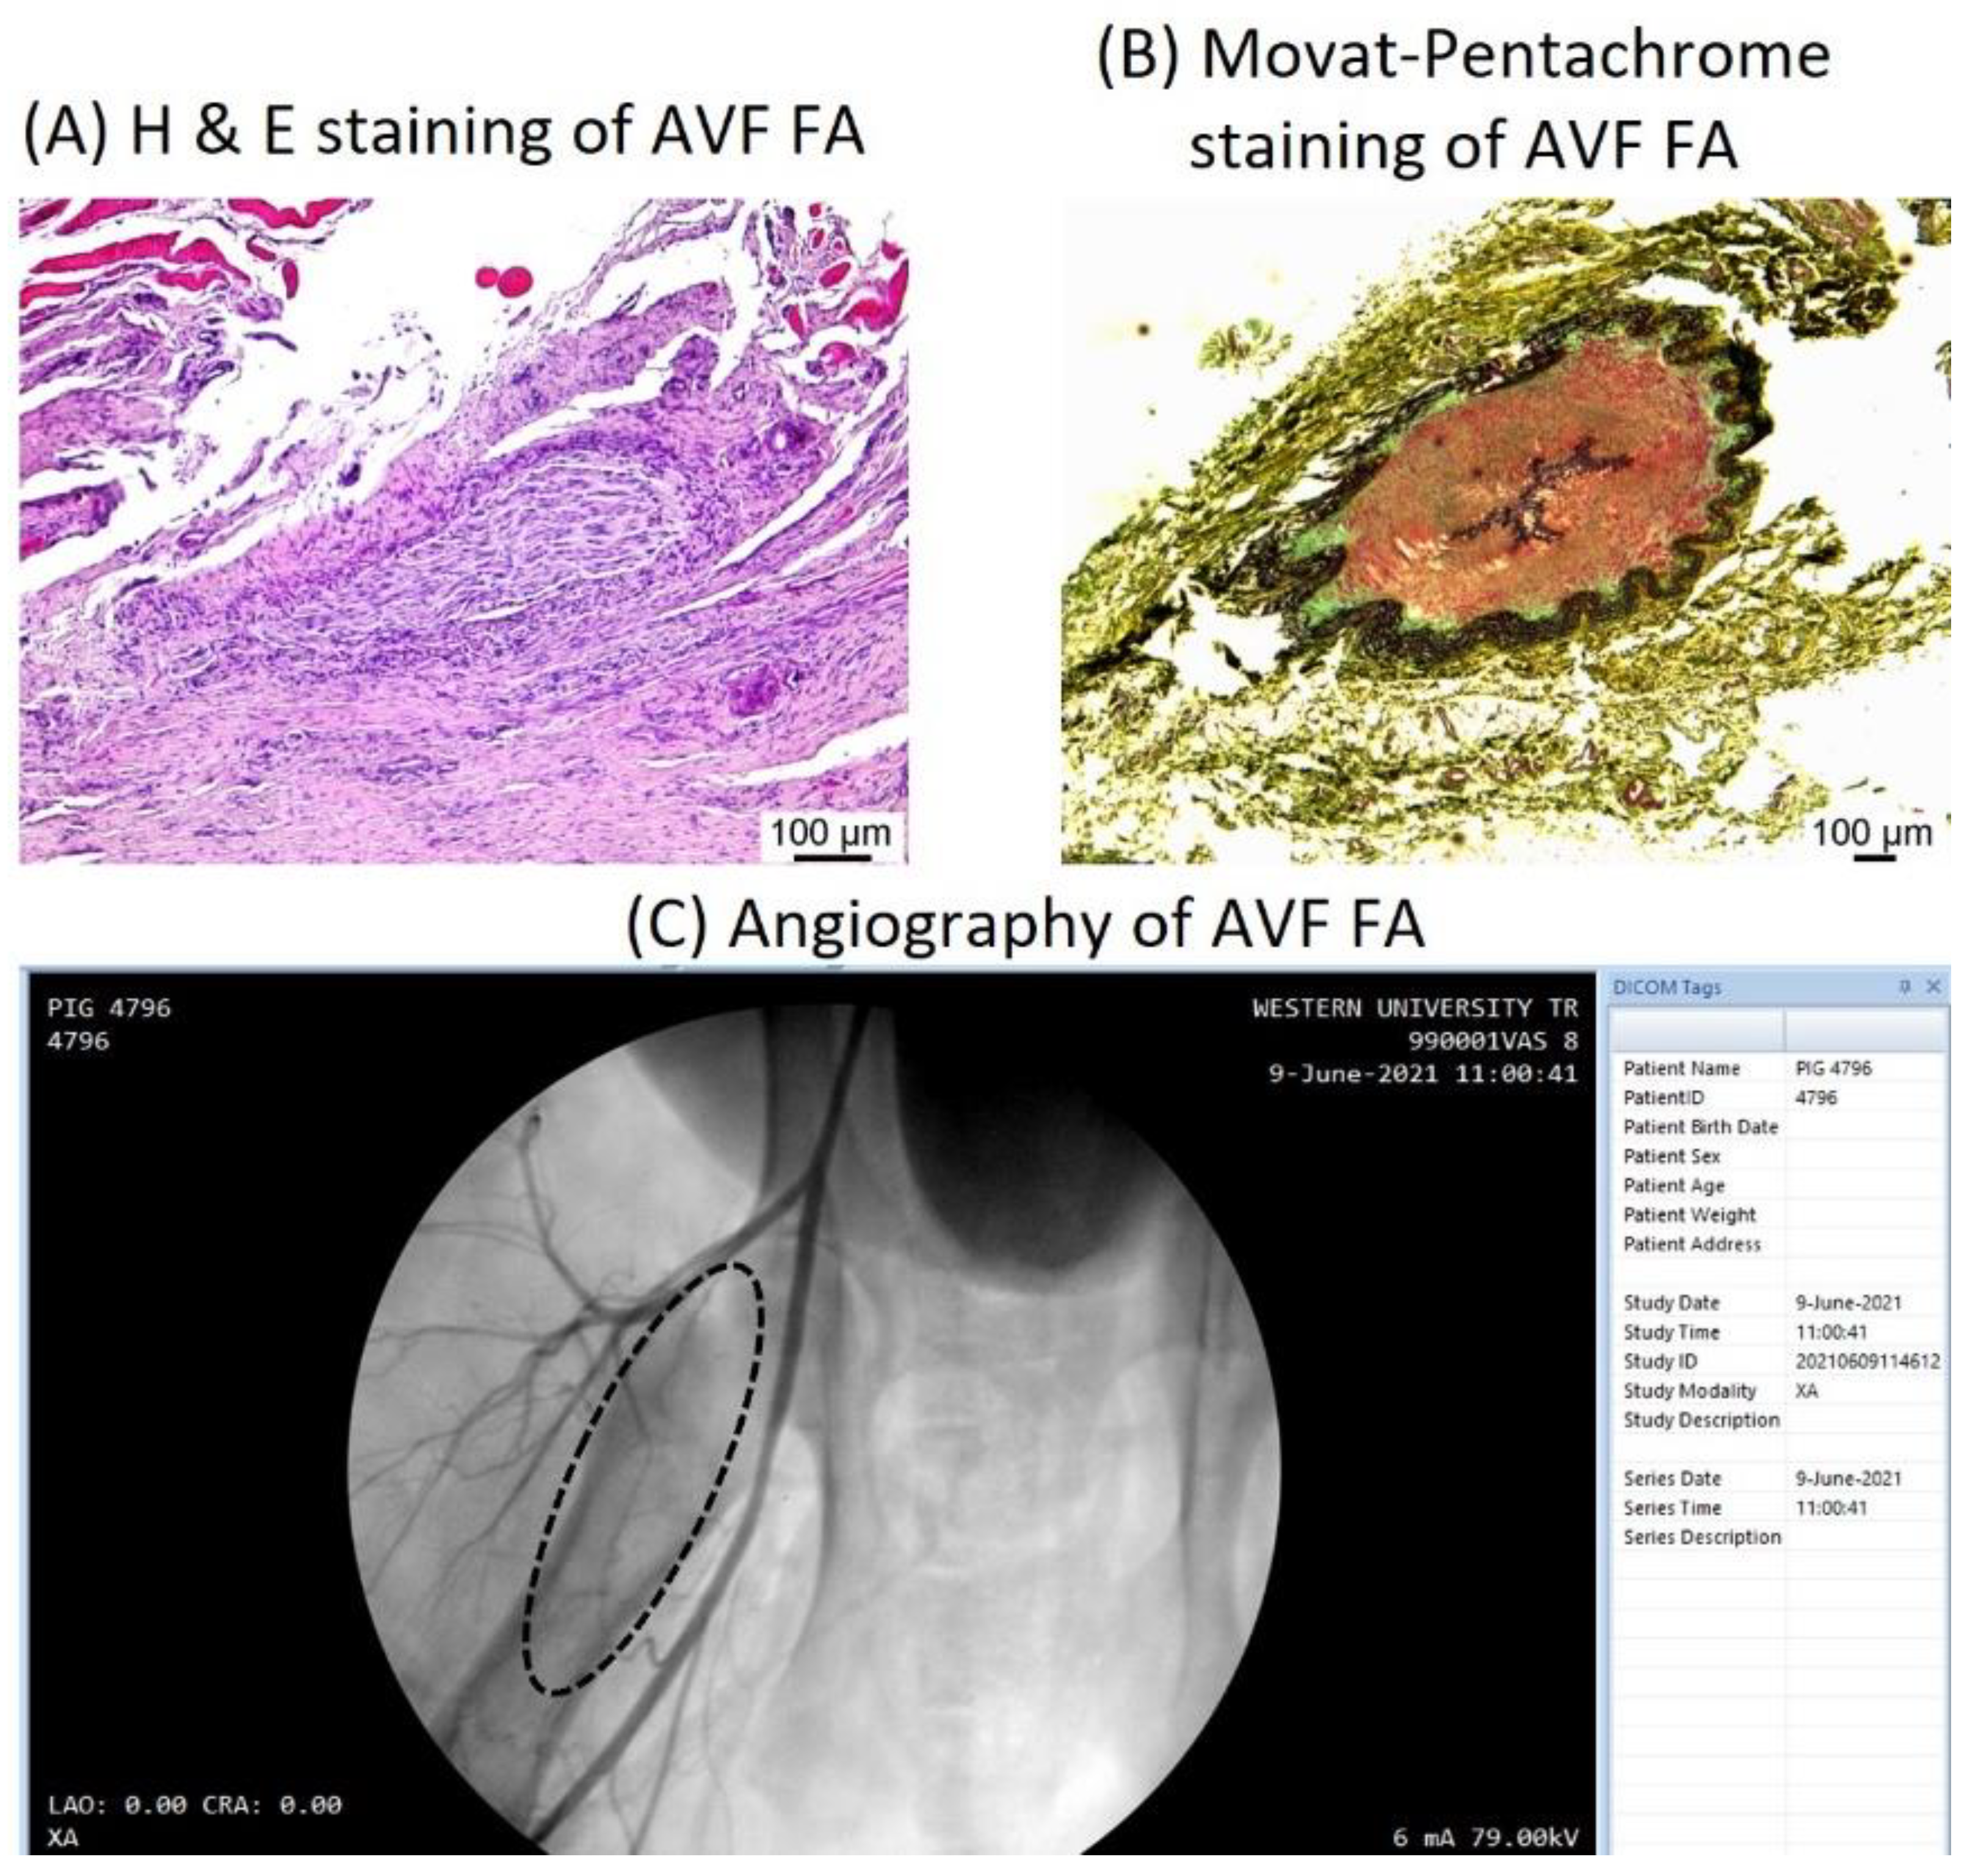 Doppler vascular mapping in Arterio Venous Fistula (AVF)